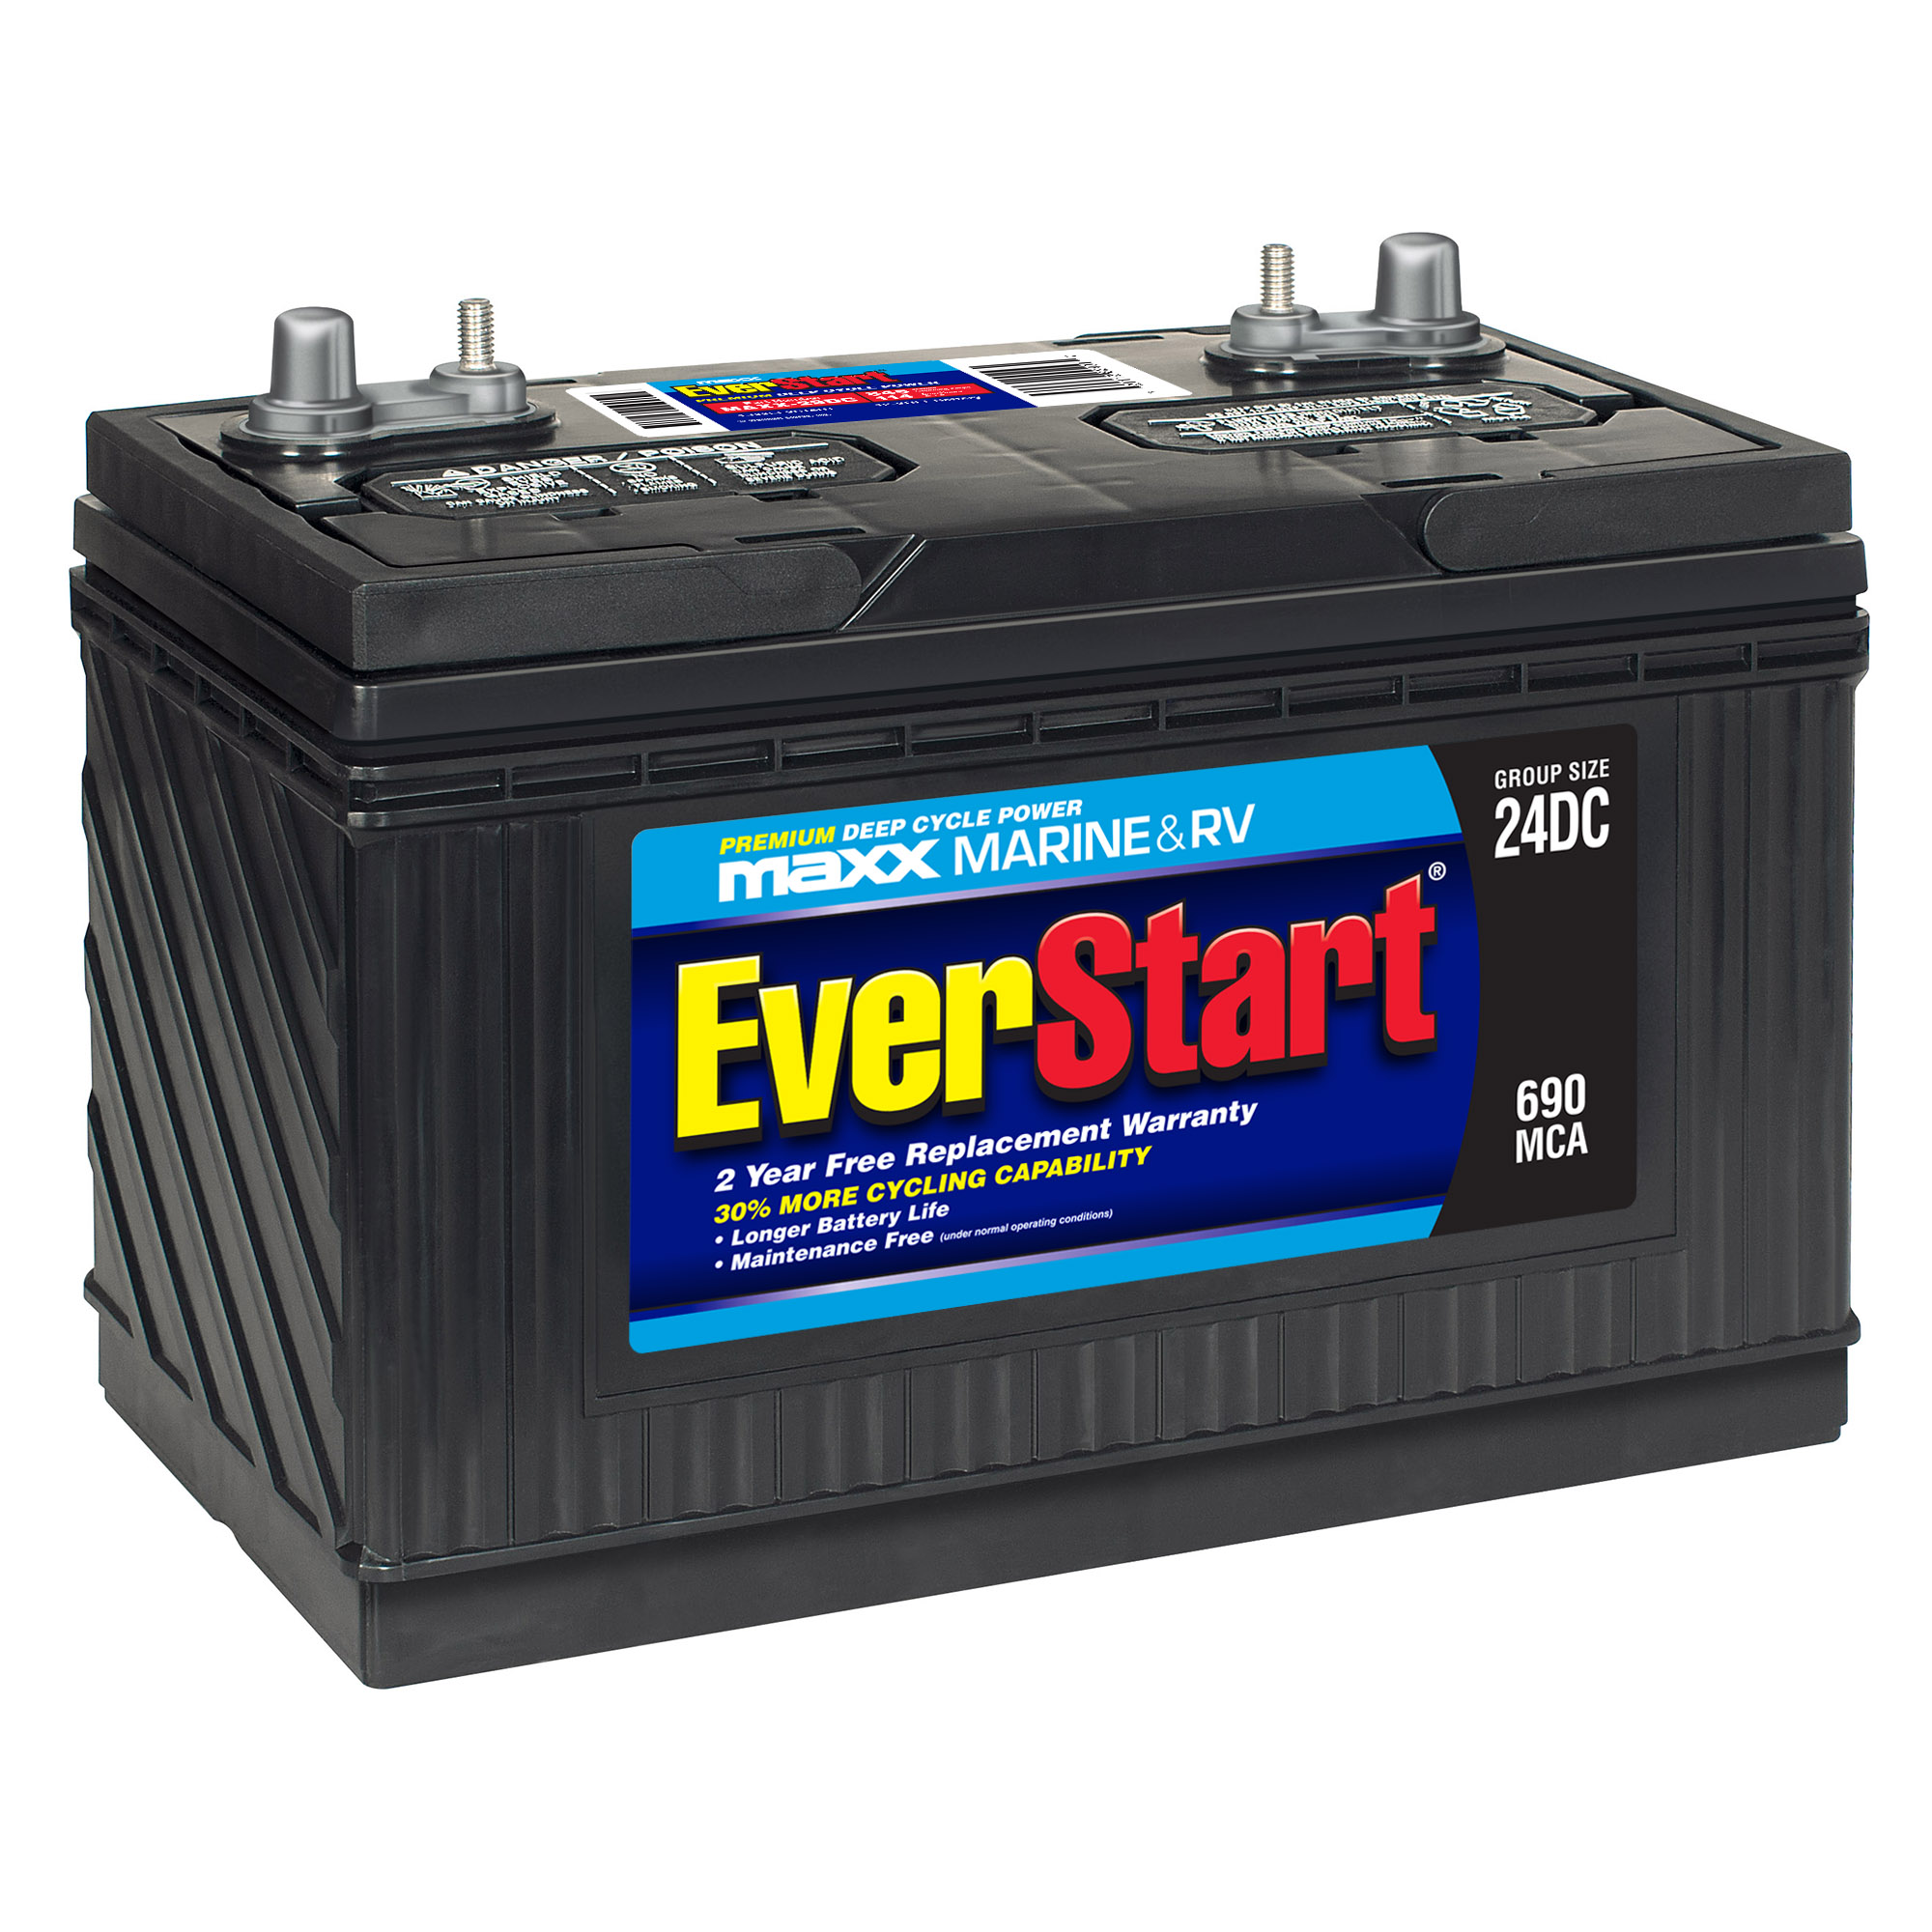 1. EverStart Maxx Marine Battery, Group Size 29DC